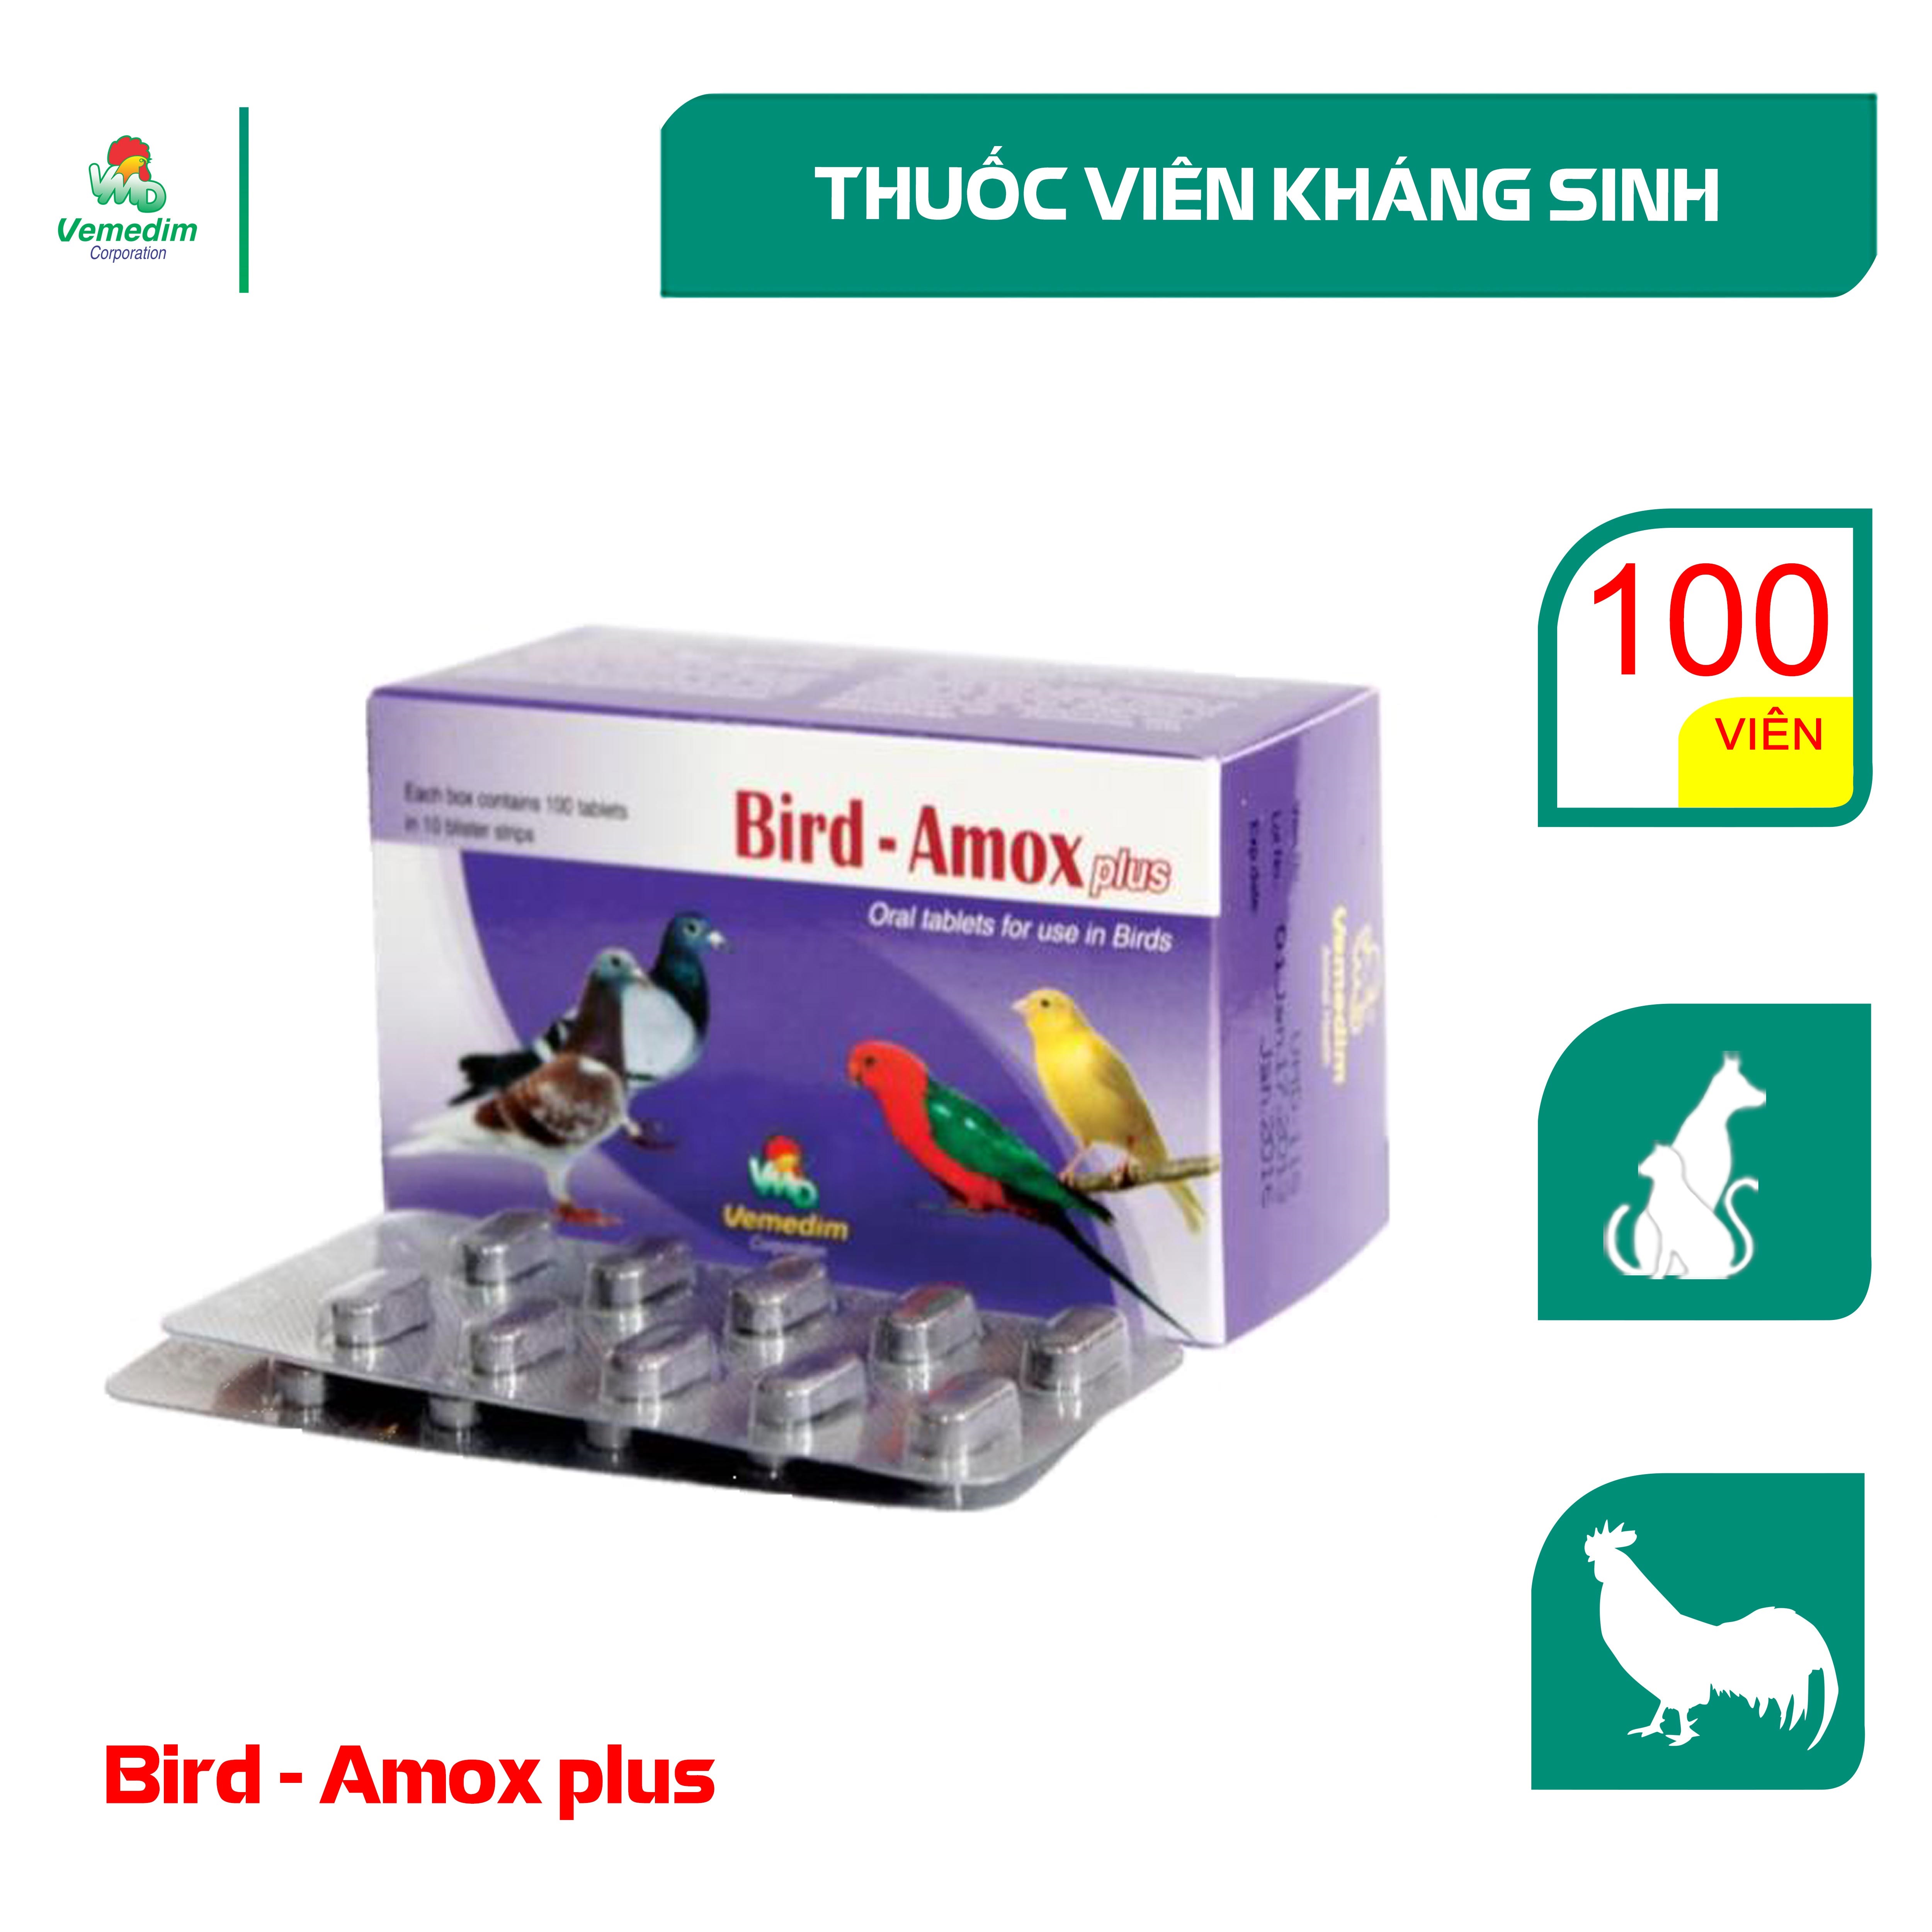 Bird Amox plus Trị nhiễm trùng da, mô mềm, nhiễm khuẩn đường tiết niệu, hô hấp, viêm ruột cho gà đá, chó, mèo, Hộp 100 viên, sản phẩm Vemedim